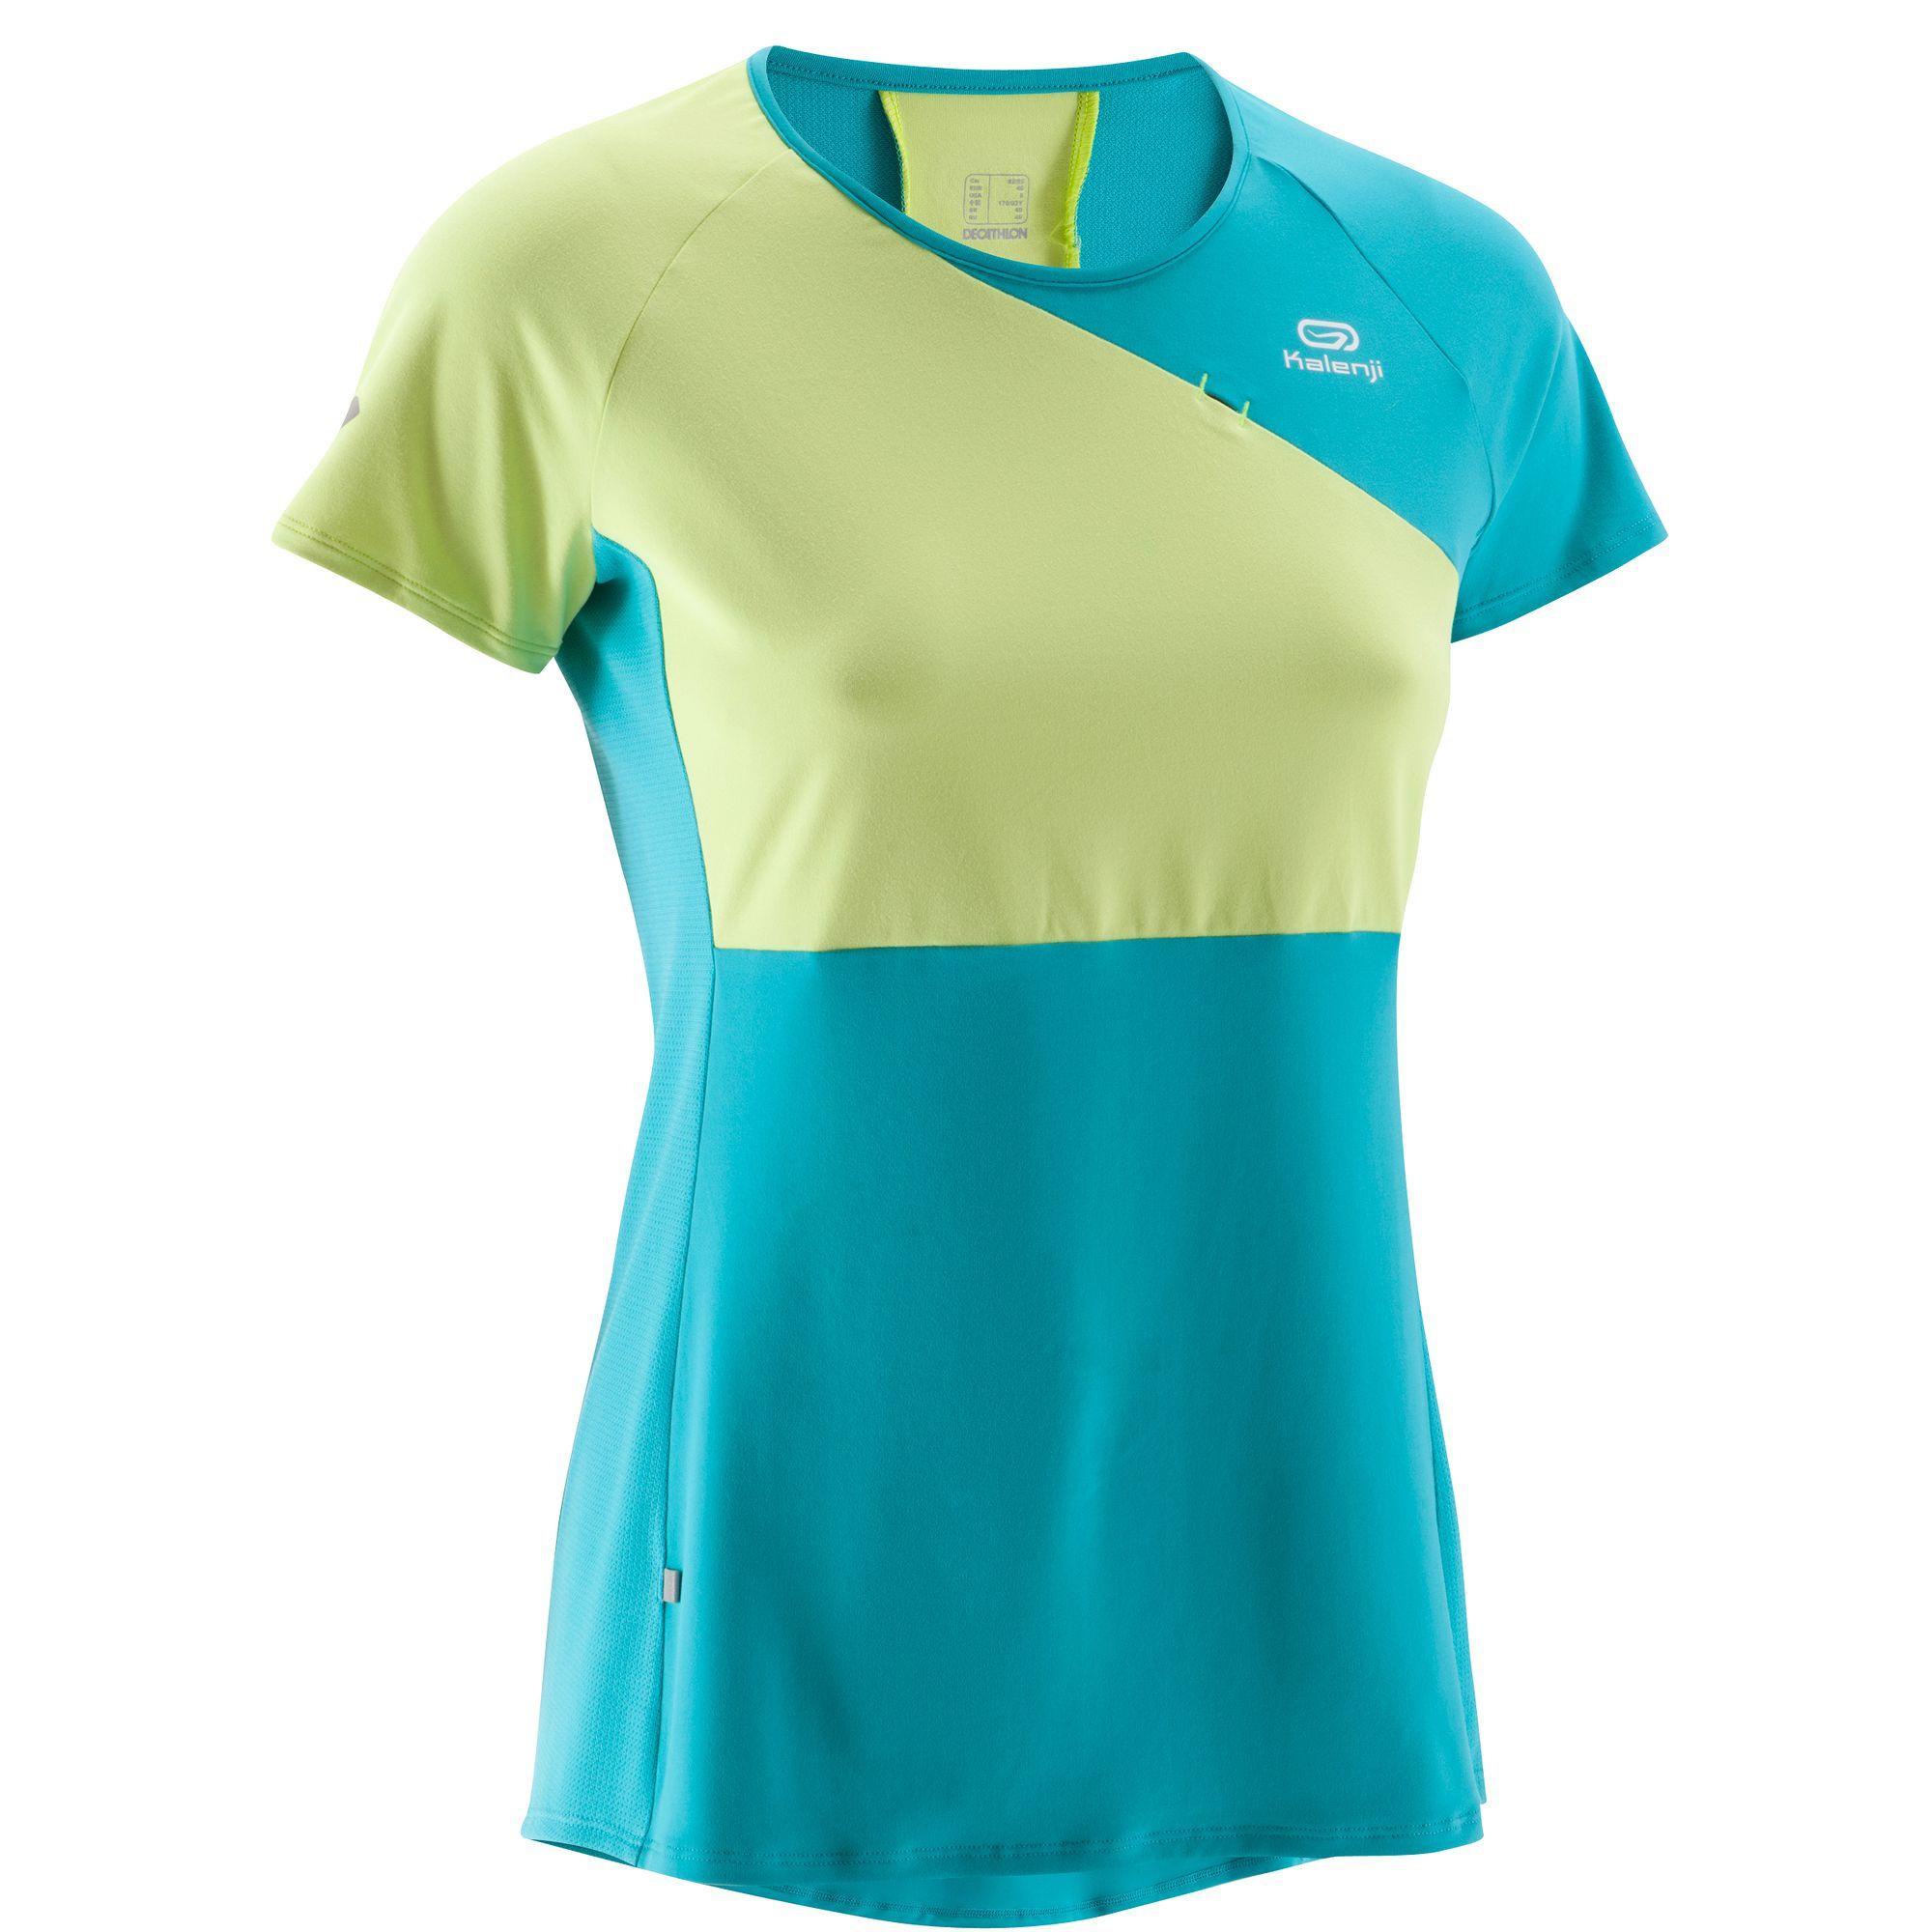 KALENJI Eliofeel Women's Running T-Shirt - Yellow/Green